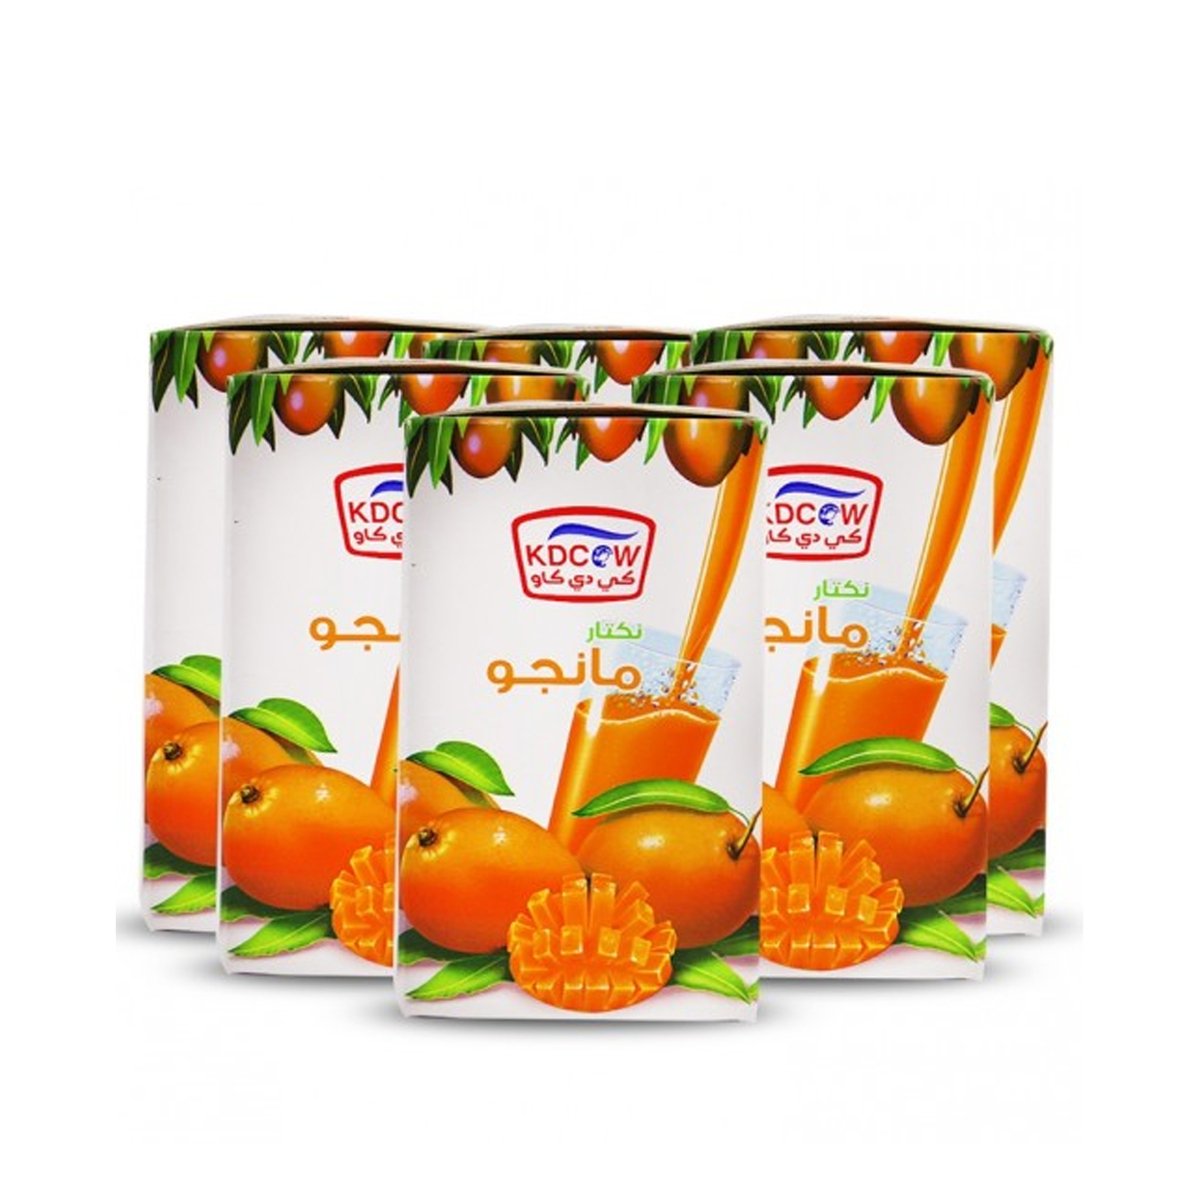 Kdcow Mango Juice 6 x 250ml